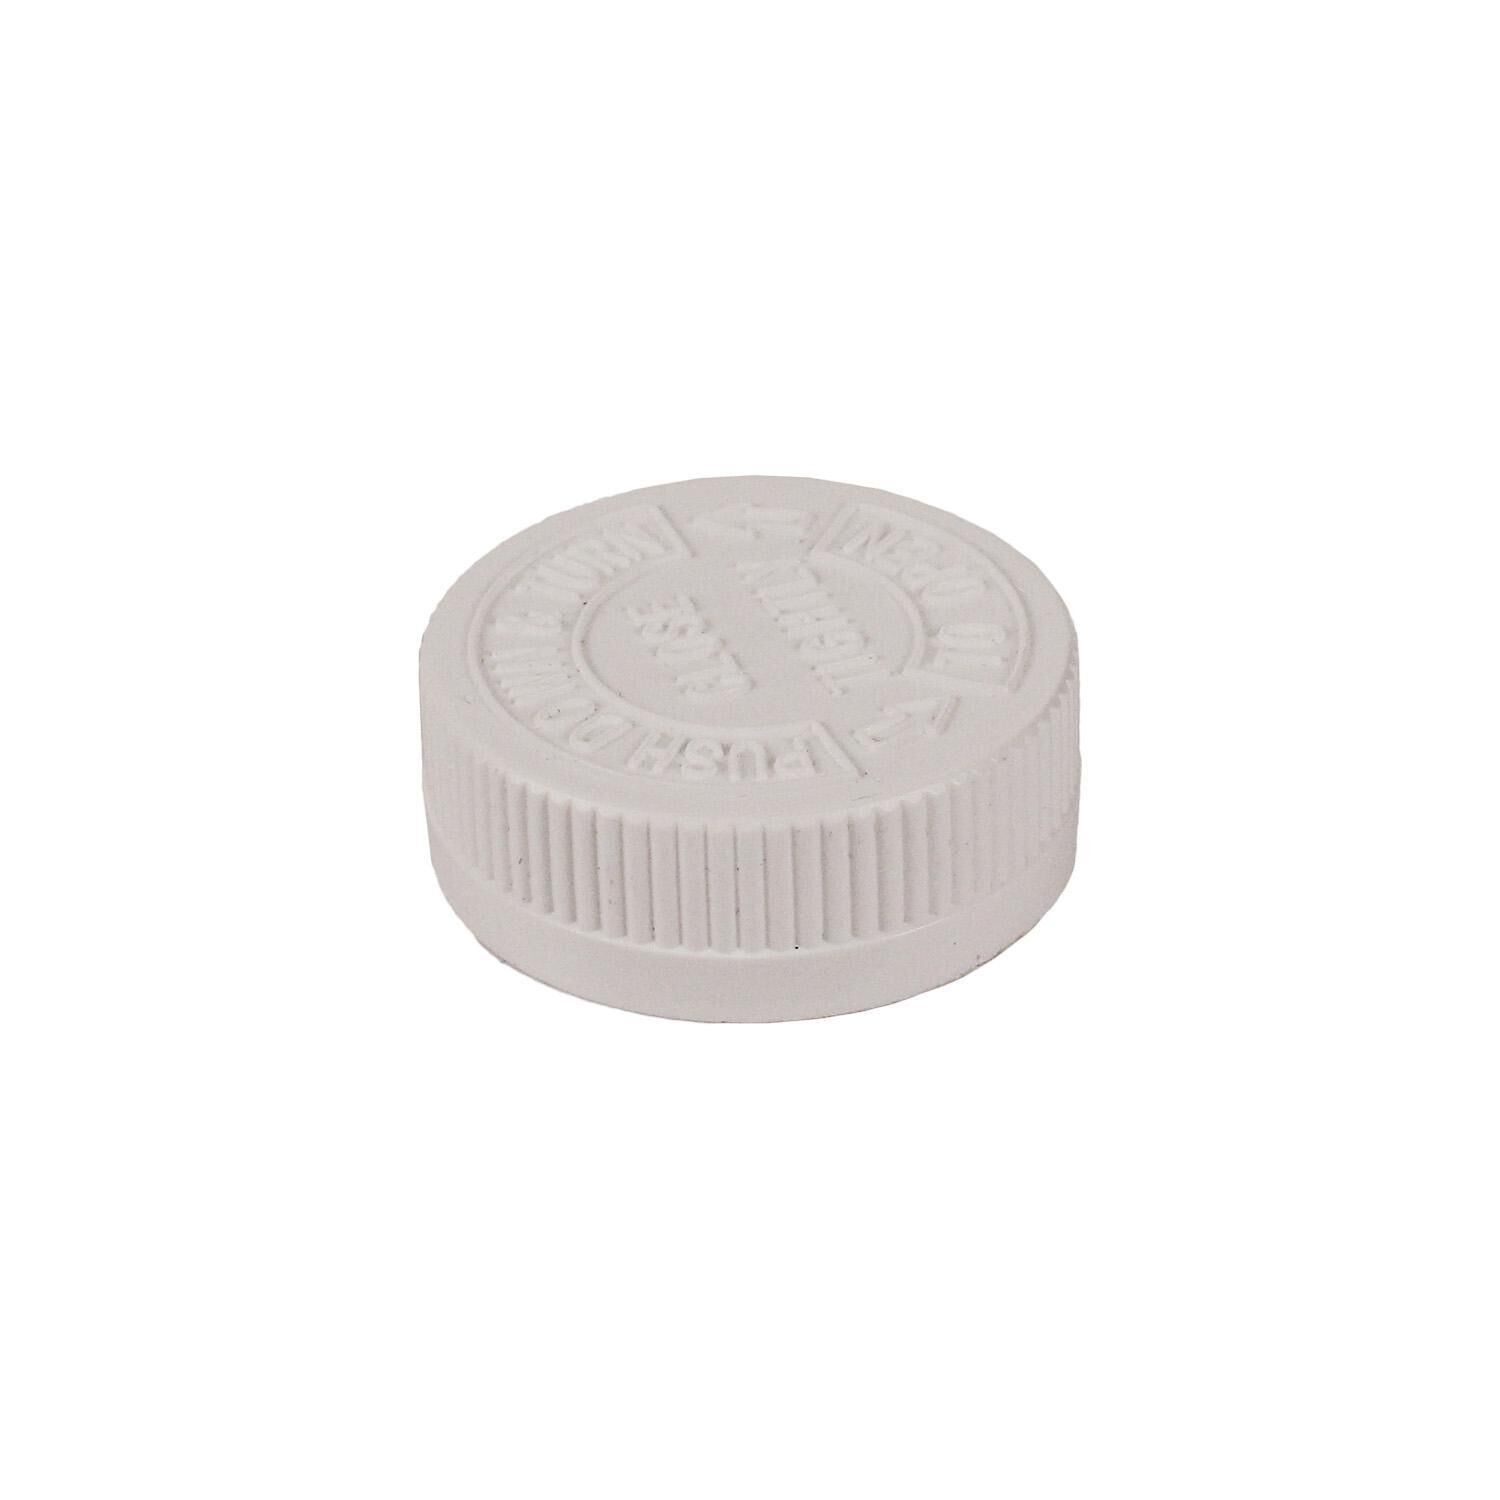 Крышка пластиковая, нажимная, для таблеточных флаконов, DPI400-38, 1 шт